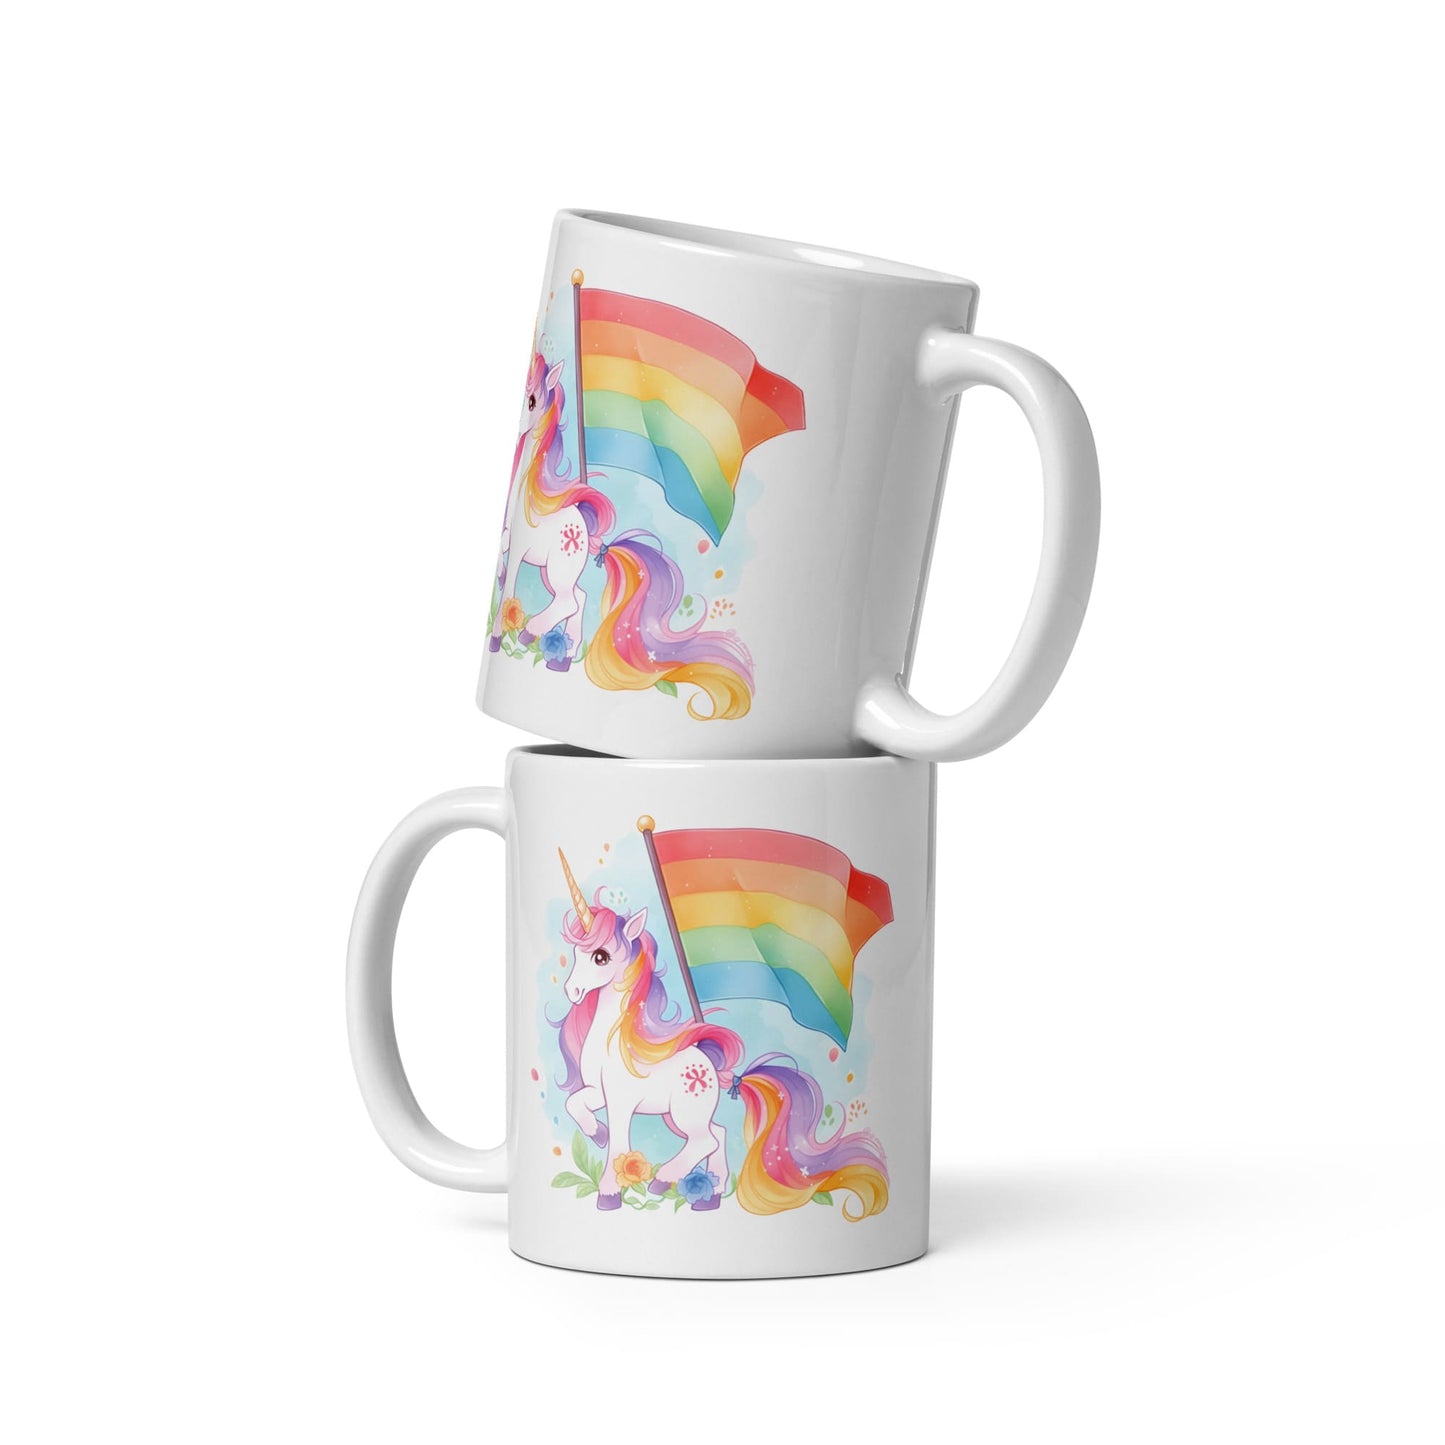 LGBTQ mug, cute rainbow unicorn coffee or tea cup both sides